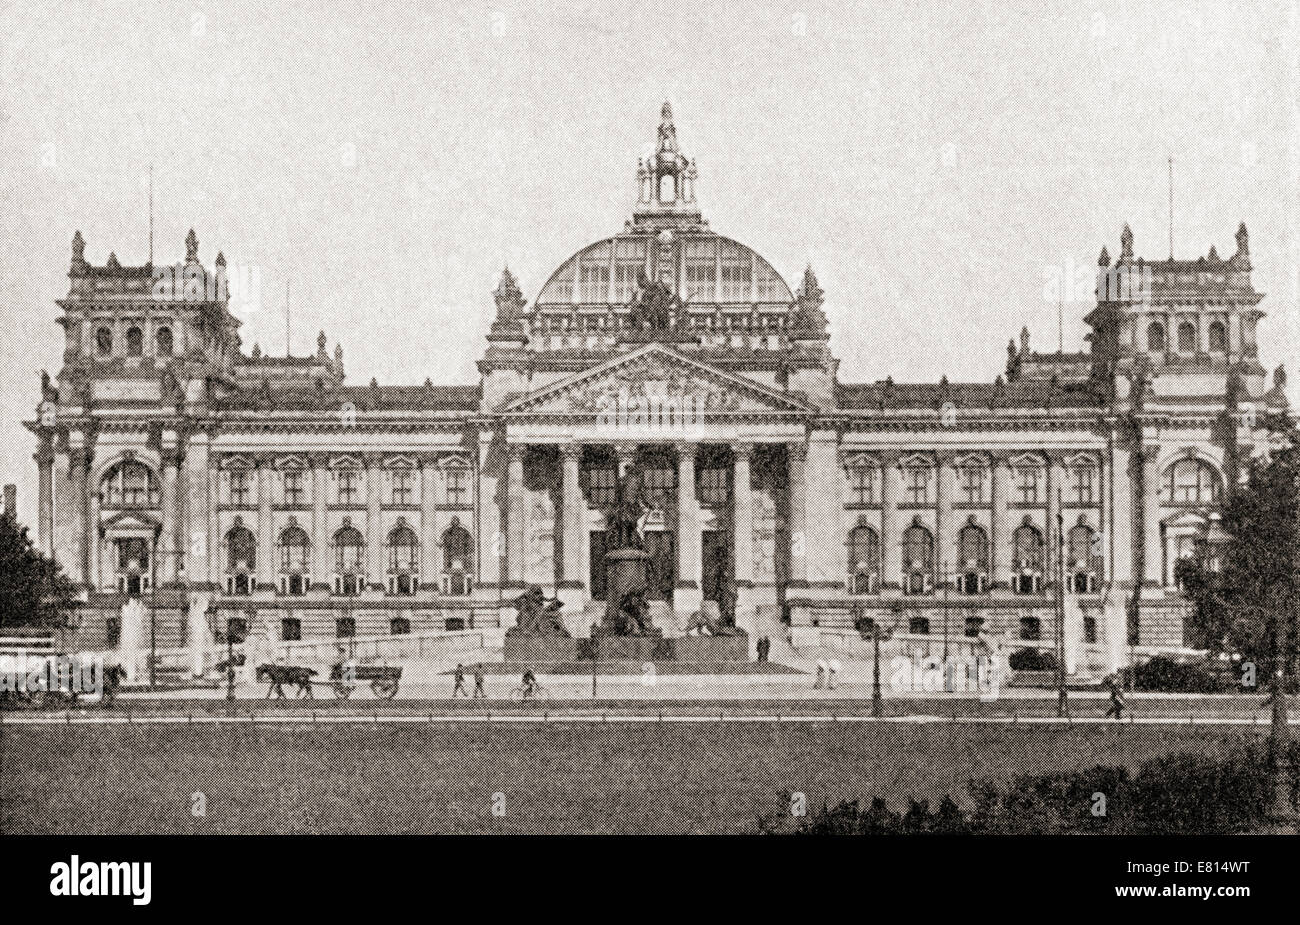 Le bâtiment du Reichstag, Berlin, Allemagne avant la grande guerre. À partir de l'histoire de la Grande Guerre, publié c. 1919 Banque D'Images